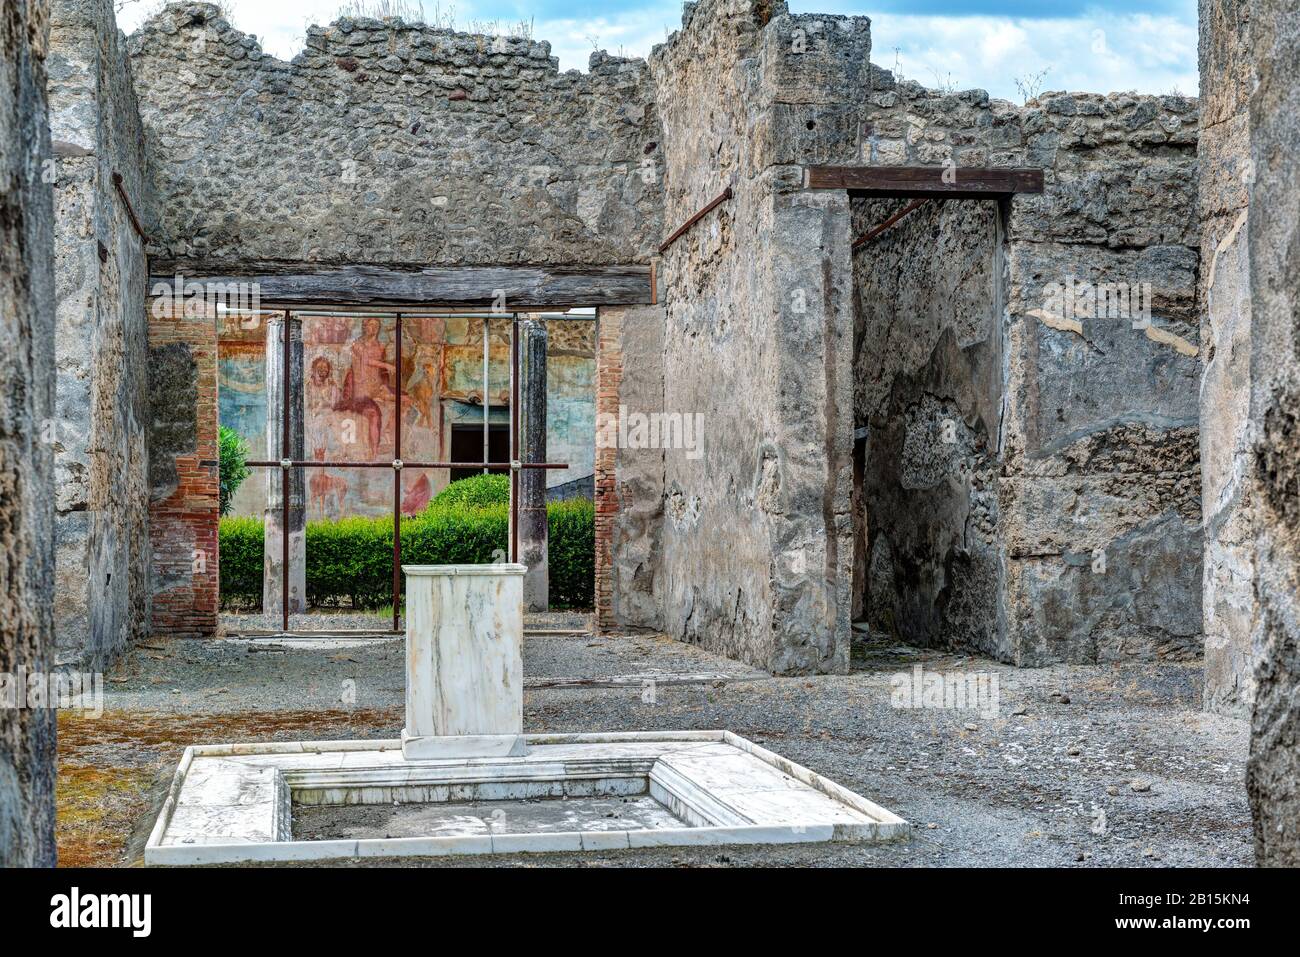 Ruinen eines Hauses in Pompeji, Italien. Pompeji ist eine antike römische Stadt, die durch den Ausbruch des Vesuvs im Jahr 79 n. Chr. starb. Stockfoto